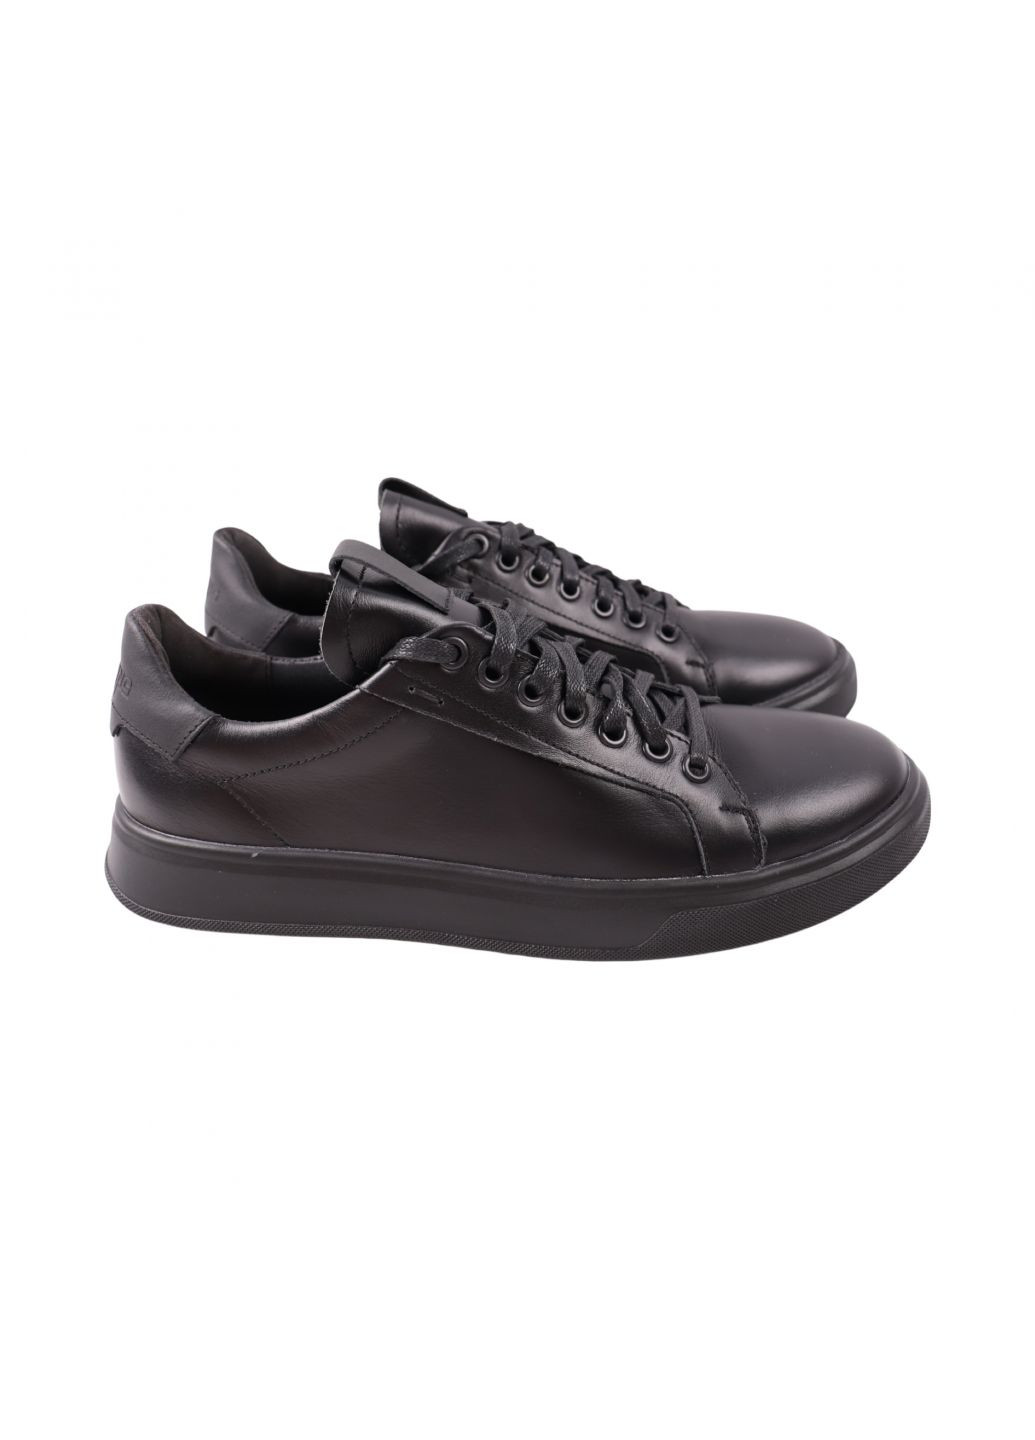 Черные кеды мужские черные натуральная кожа Maxus Shoes 137-23DTC